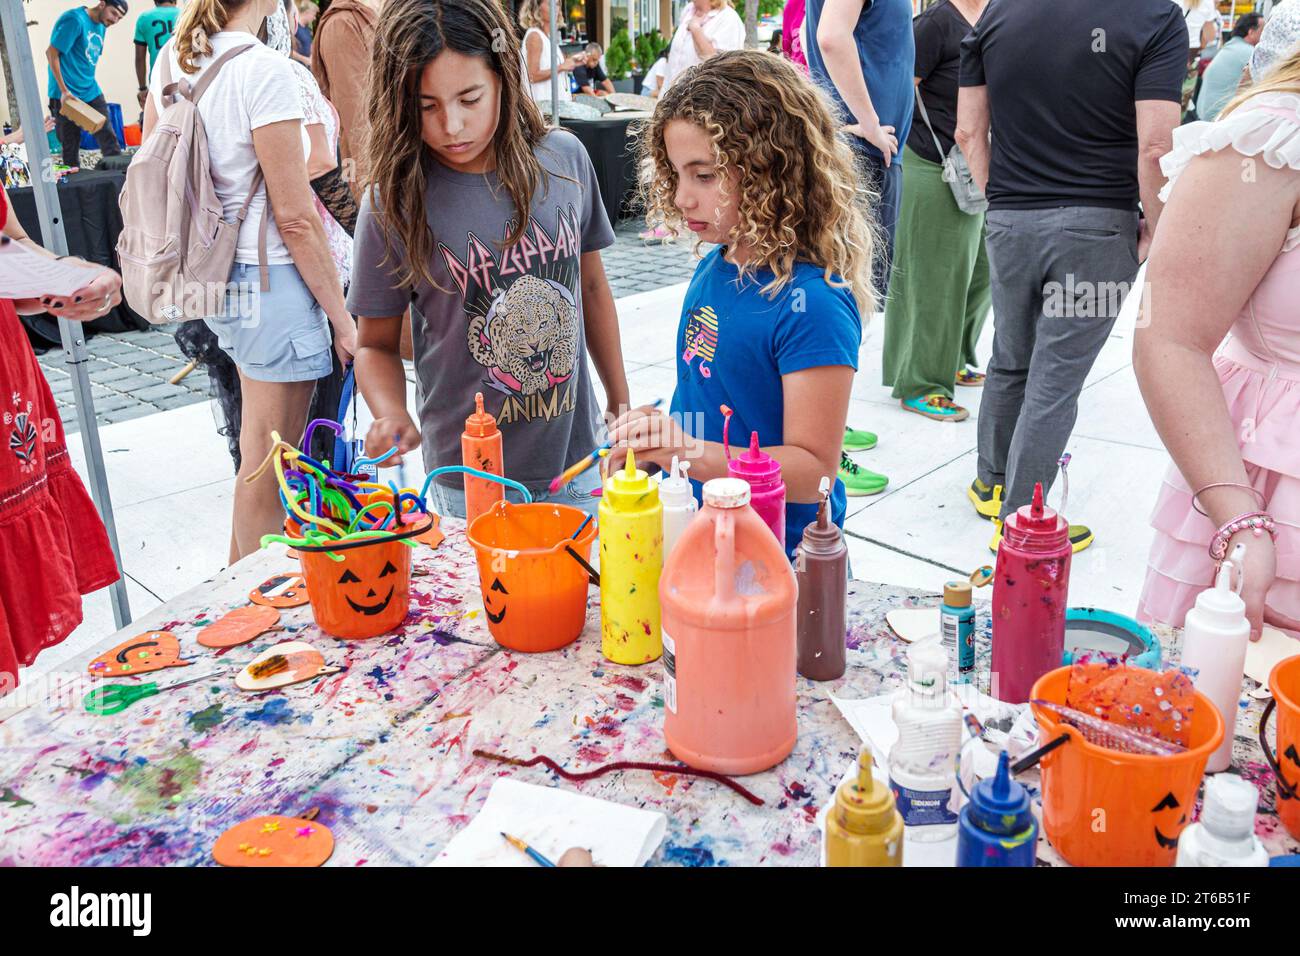 Miami Beach Floride, Normandy Isle Fountain plaza, activités annuelles d'événement communautaire Halloween, art & artisanat peinture, enfance d'enfants, enfant, fille Banque D'Images